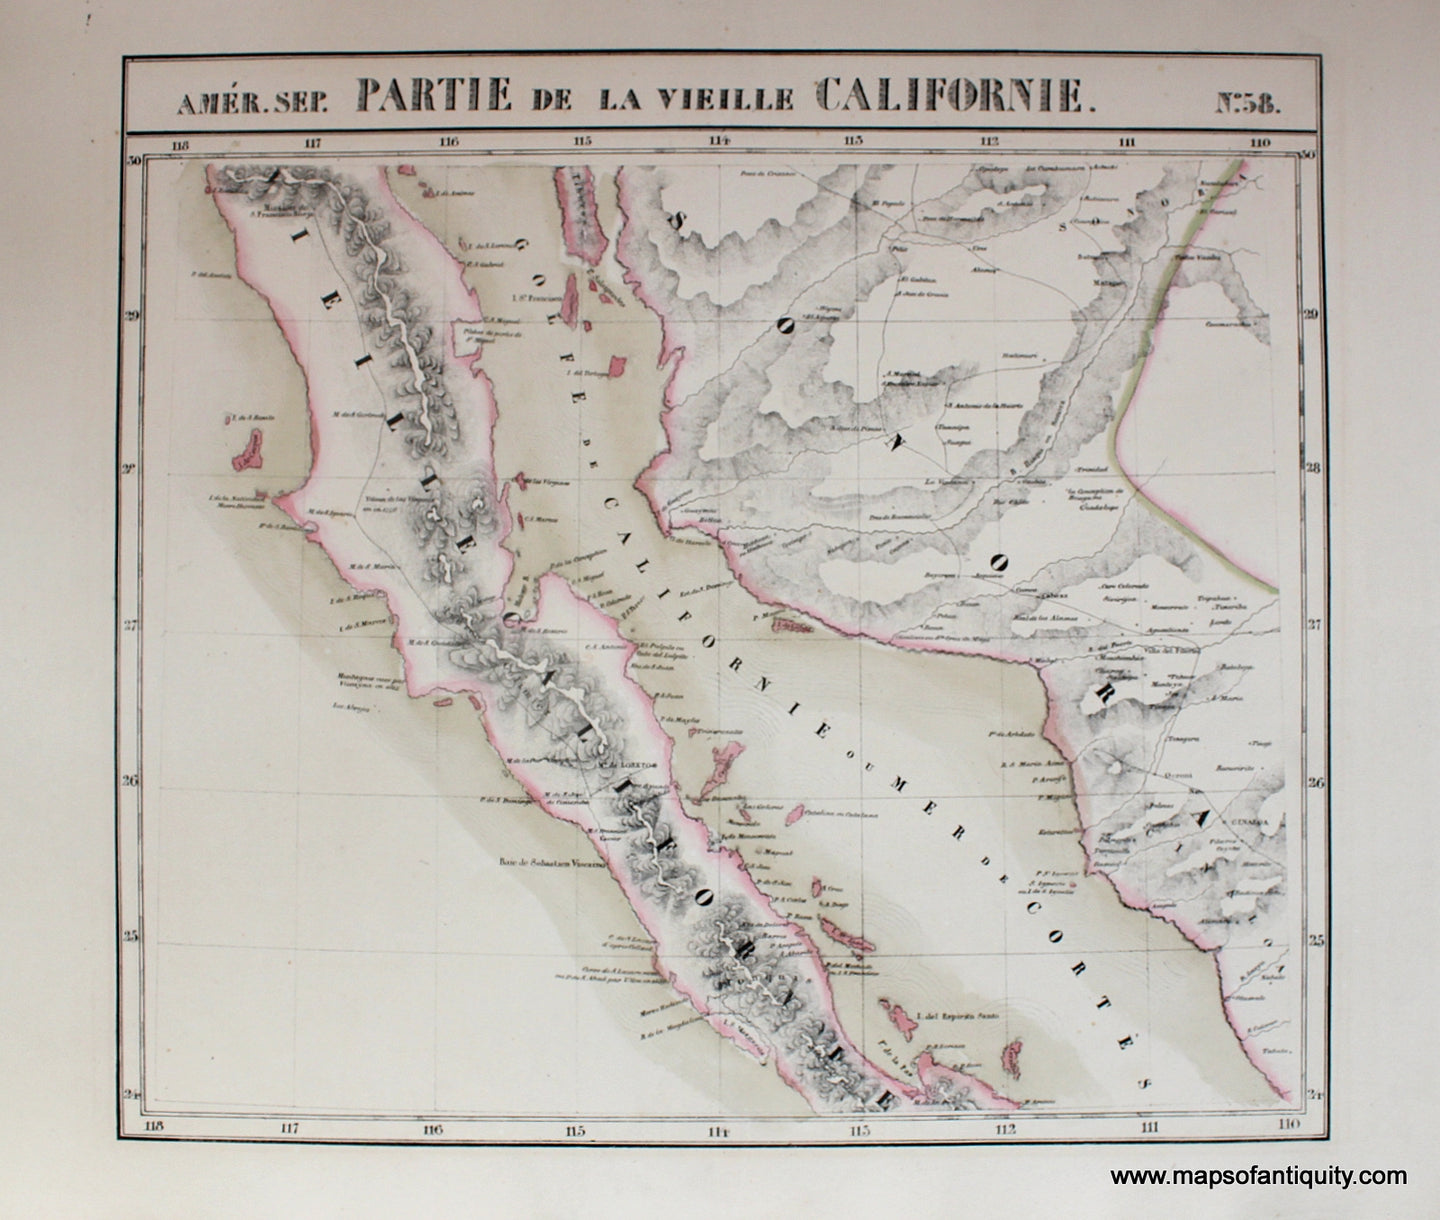 Antique-Hand-Colored-Map-Amerique-Septentrionale-No.-58-inset-with-No.-63-Partie-de-la-Vieille-Californie-United-States-West-1827-Vandermaelen-Maps-Of-Antiquity